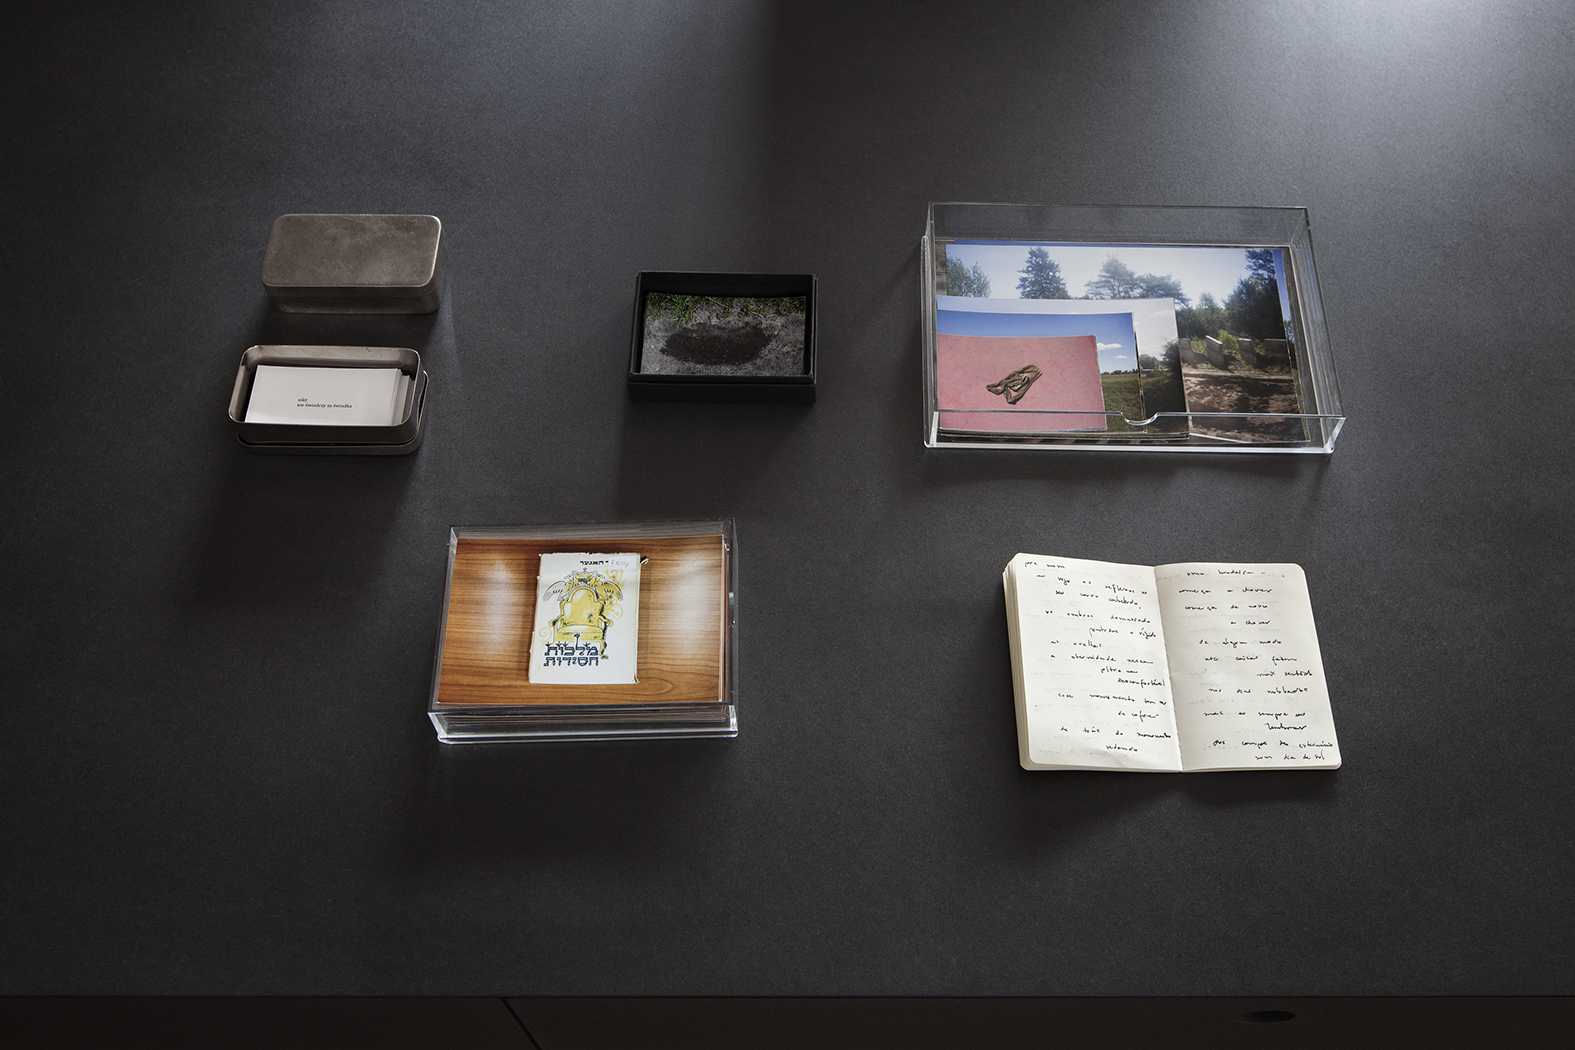 Praca Luisy Nobregi - rezydencja artystyczna w Muzeum POLIN. W gablotach na ścianie znajdują się różne przedmioty, np. kilka obrazków, pamiętnik.